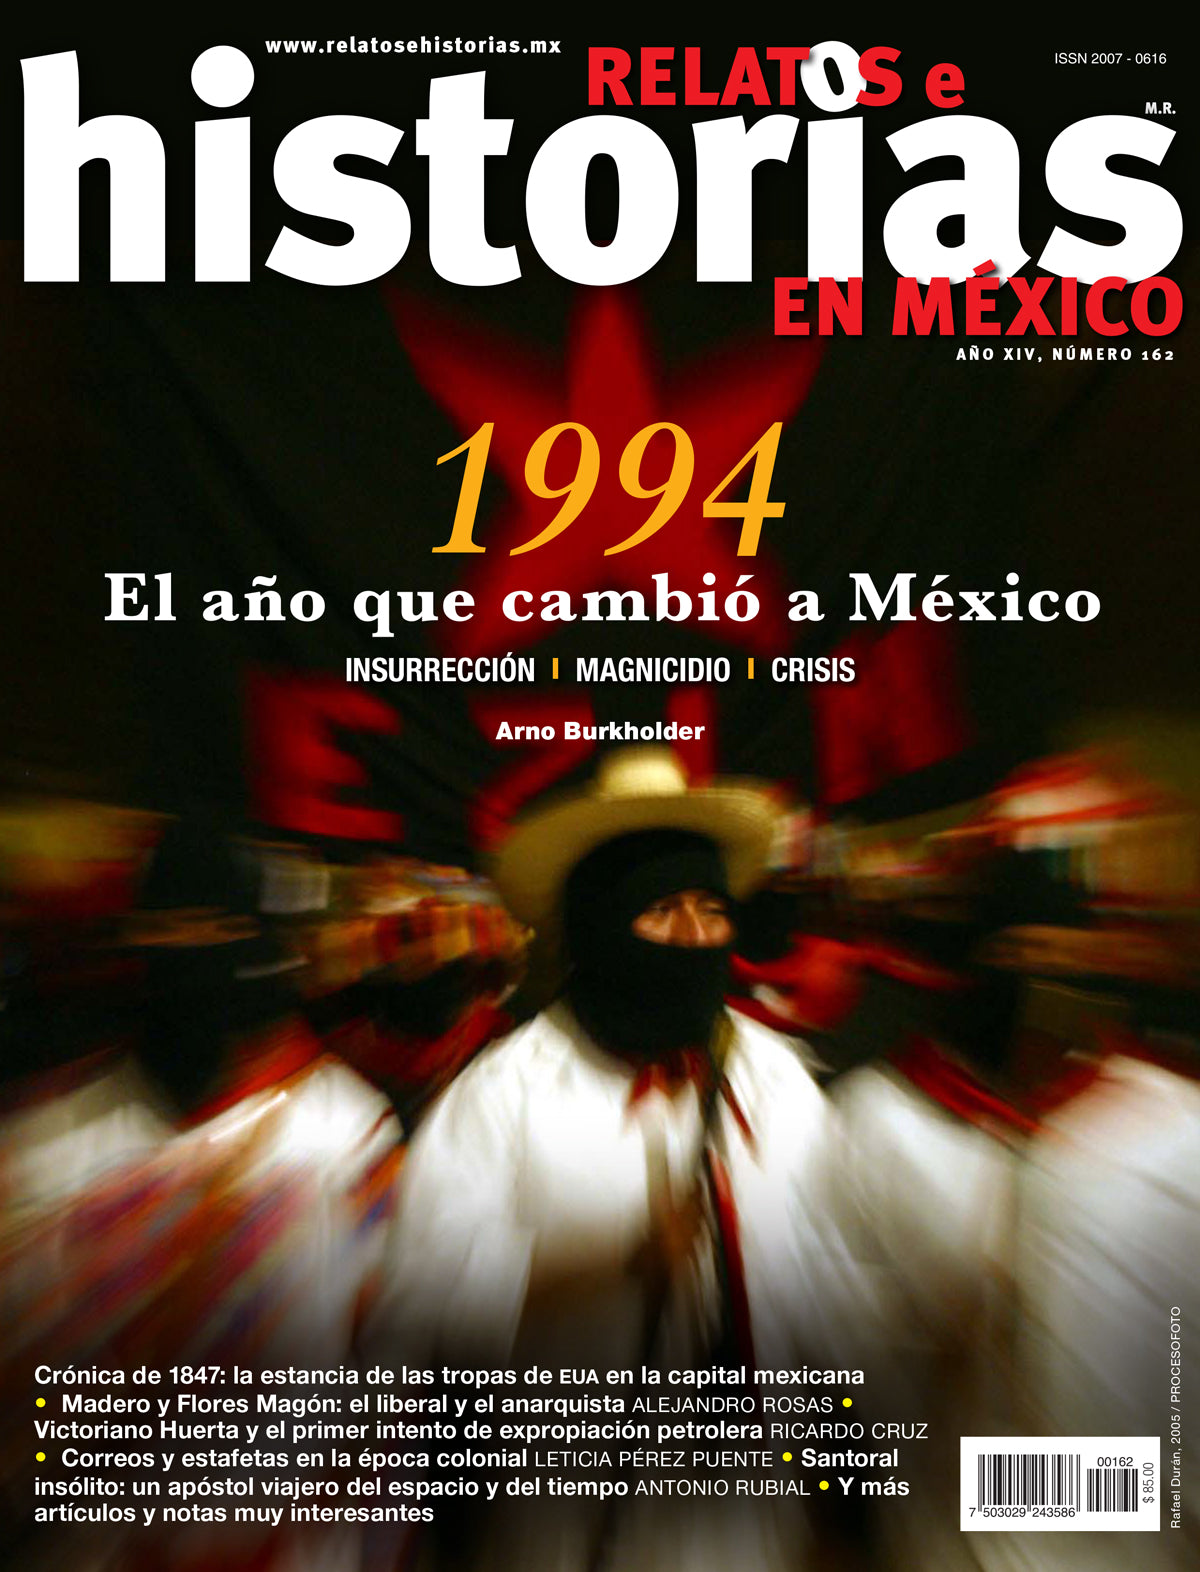 1994 El año que cambio a México